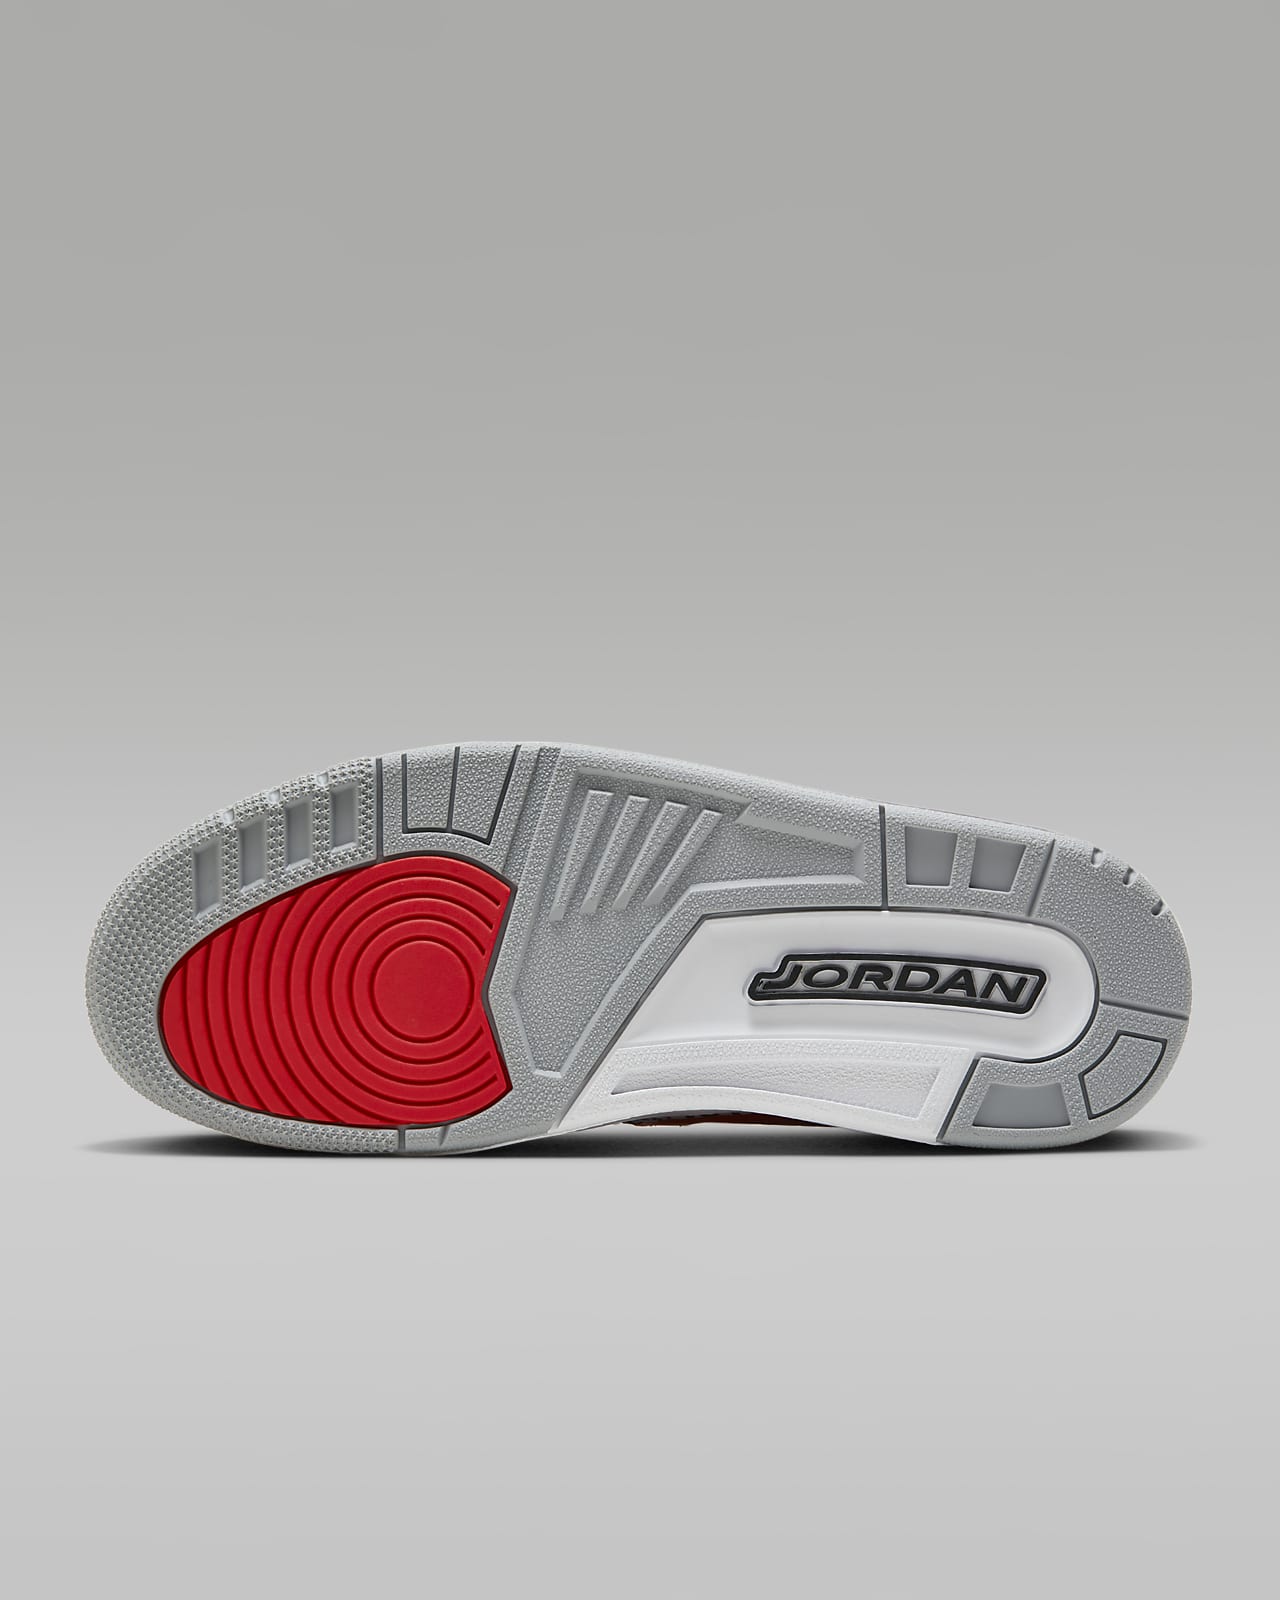 Nike Air Jordan Retro 3 x Louis Vuitton